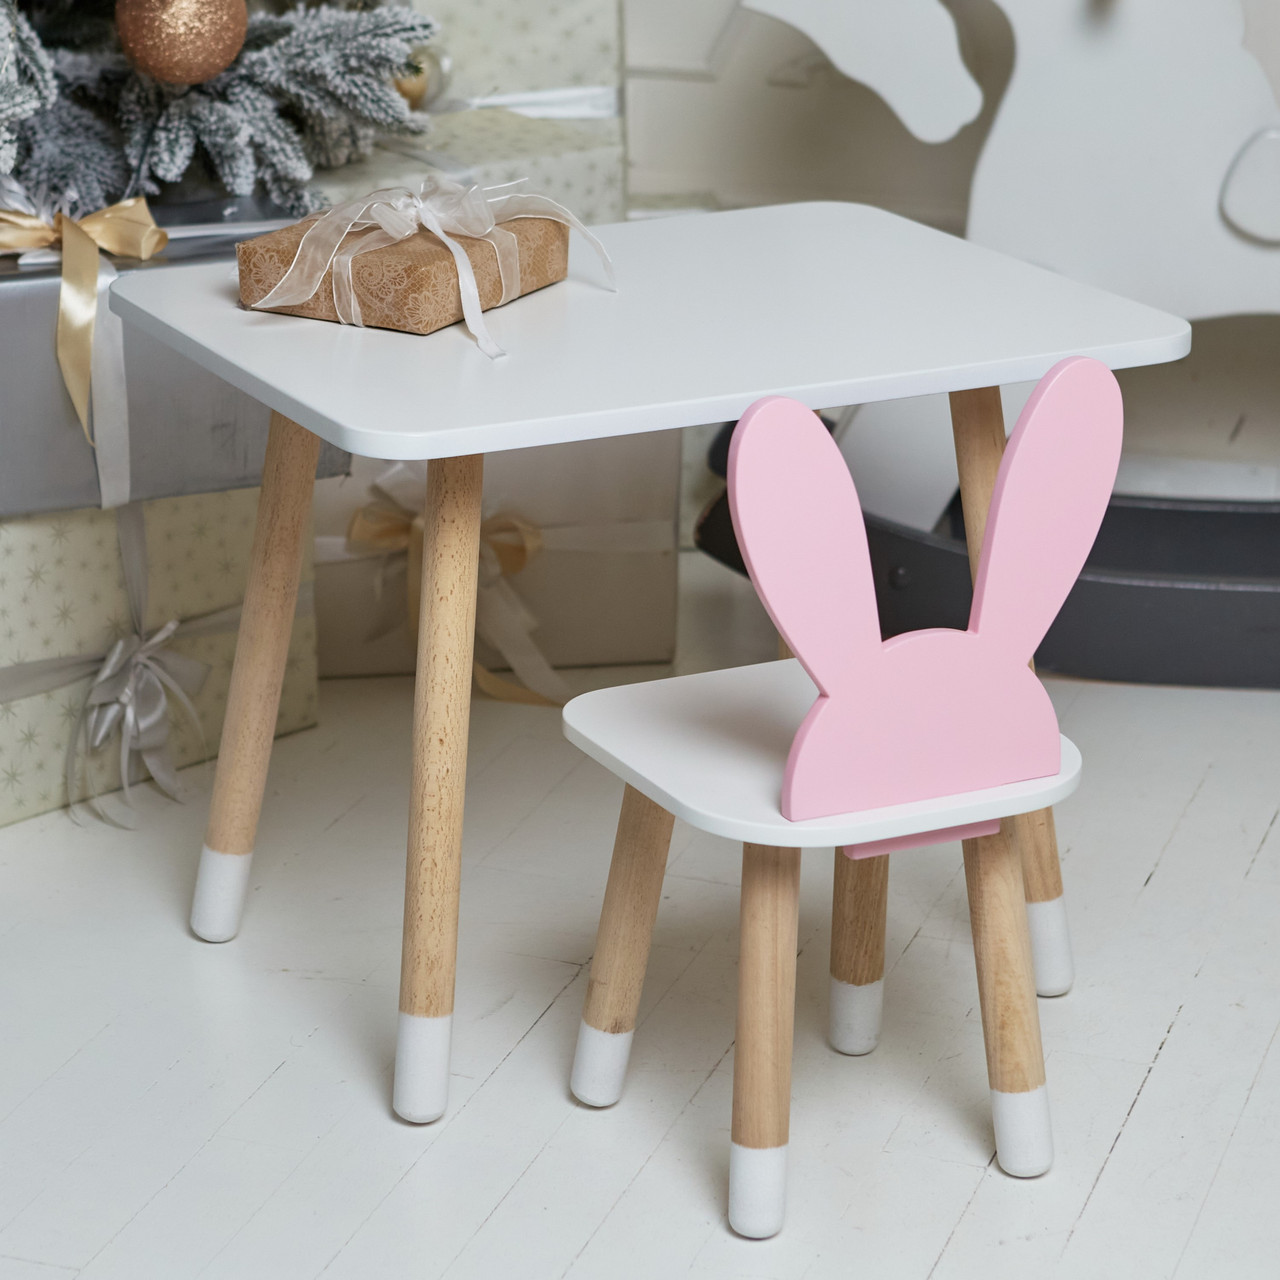 Дитячий білий прямокутний стіл і стільчик вушка зайчика рожеві. Столик для ігор, уроків, їжі. Білий столик